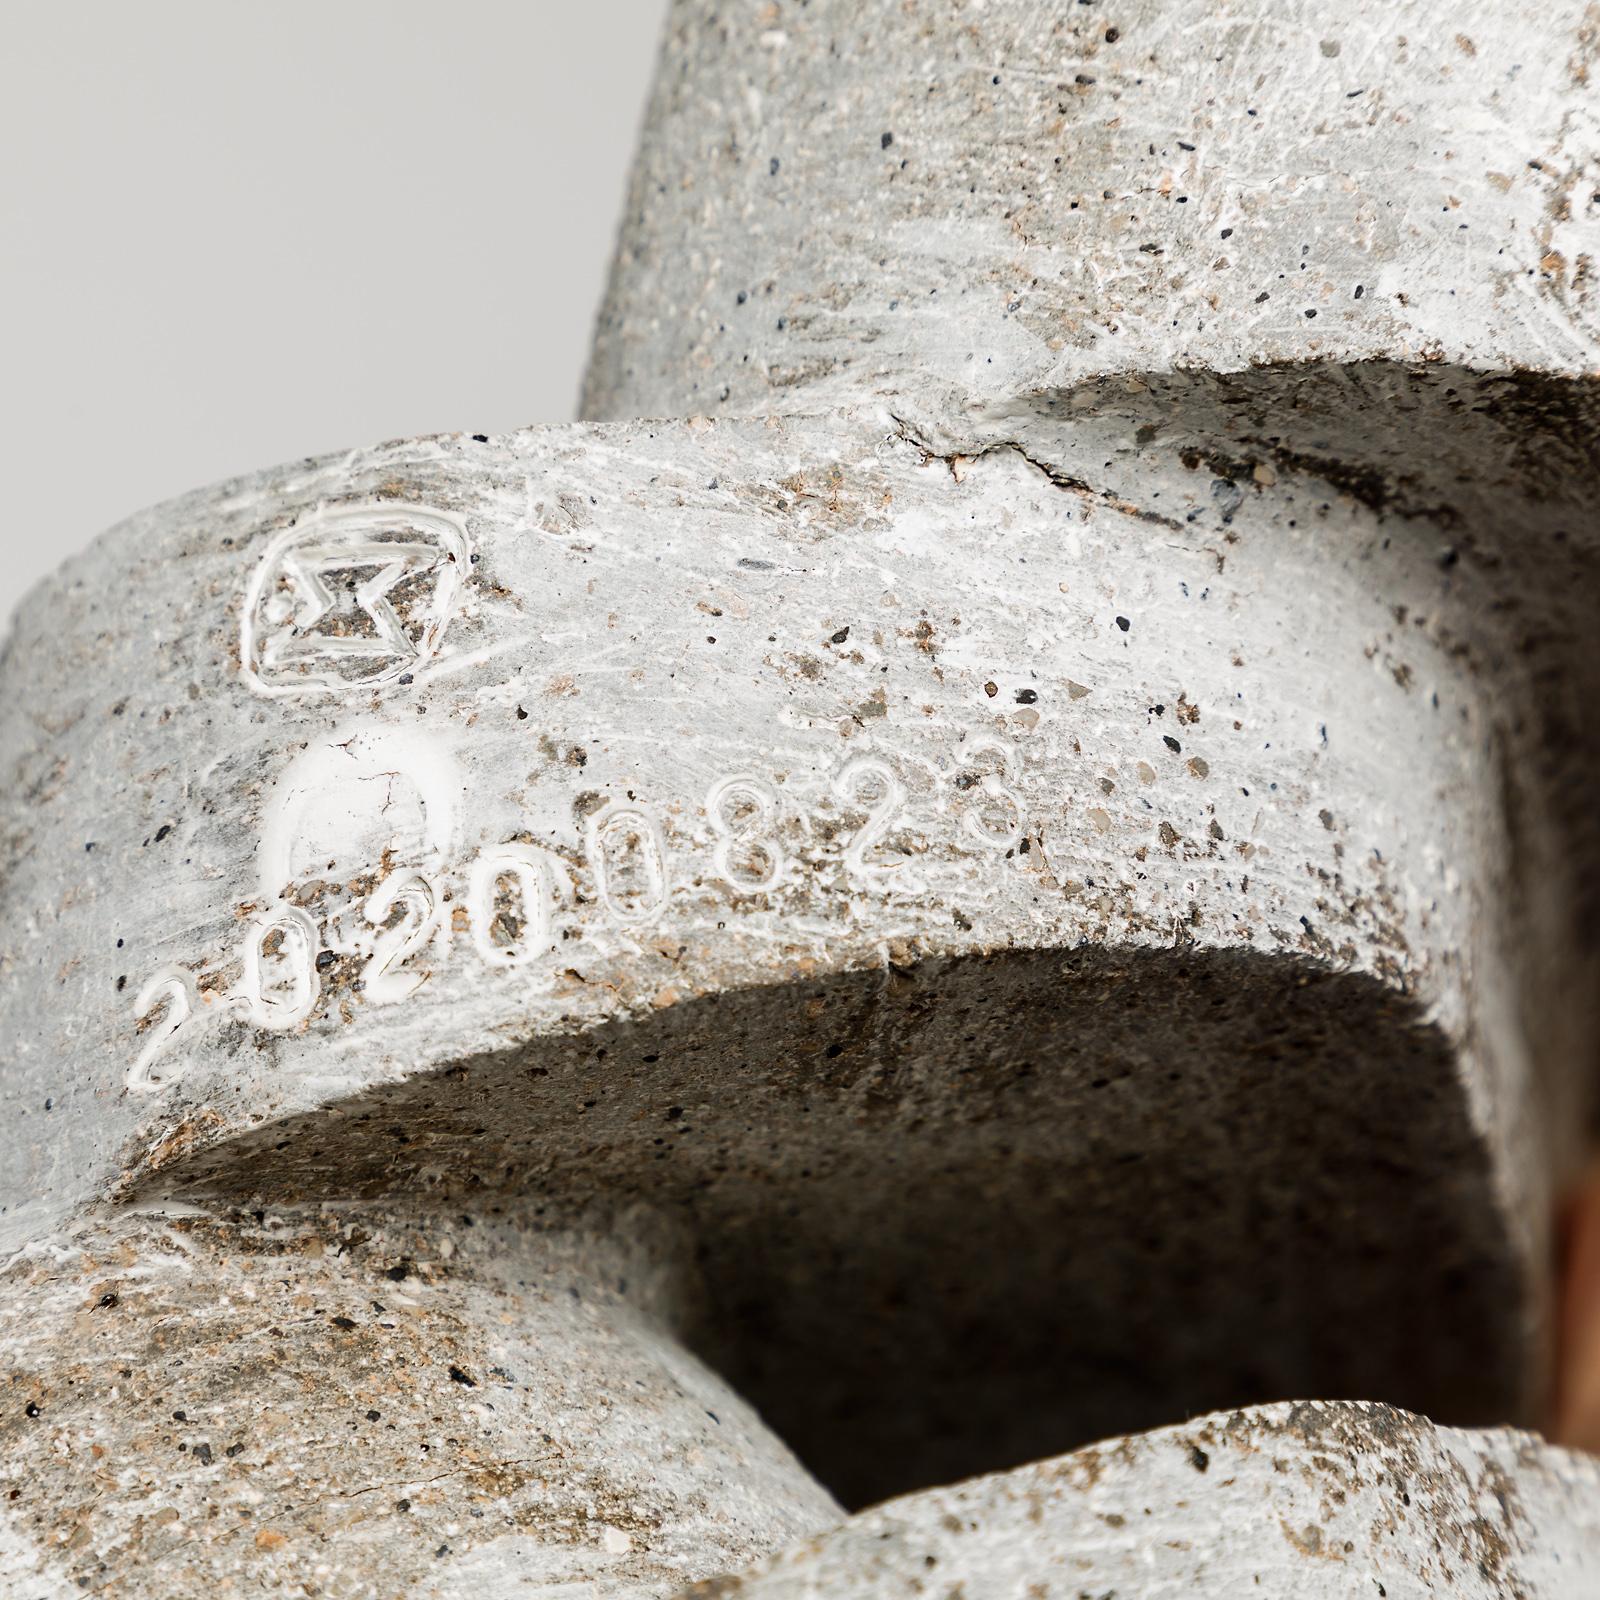 Ceramic Stoneware Sculpture by Maarten Stuer, Entitled 